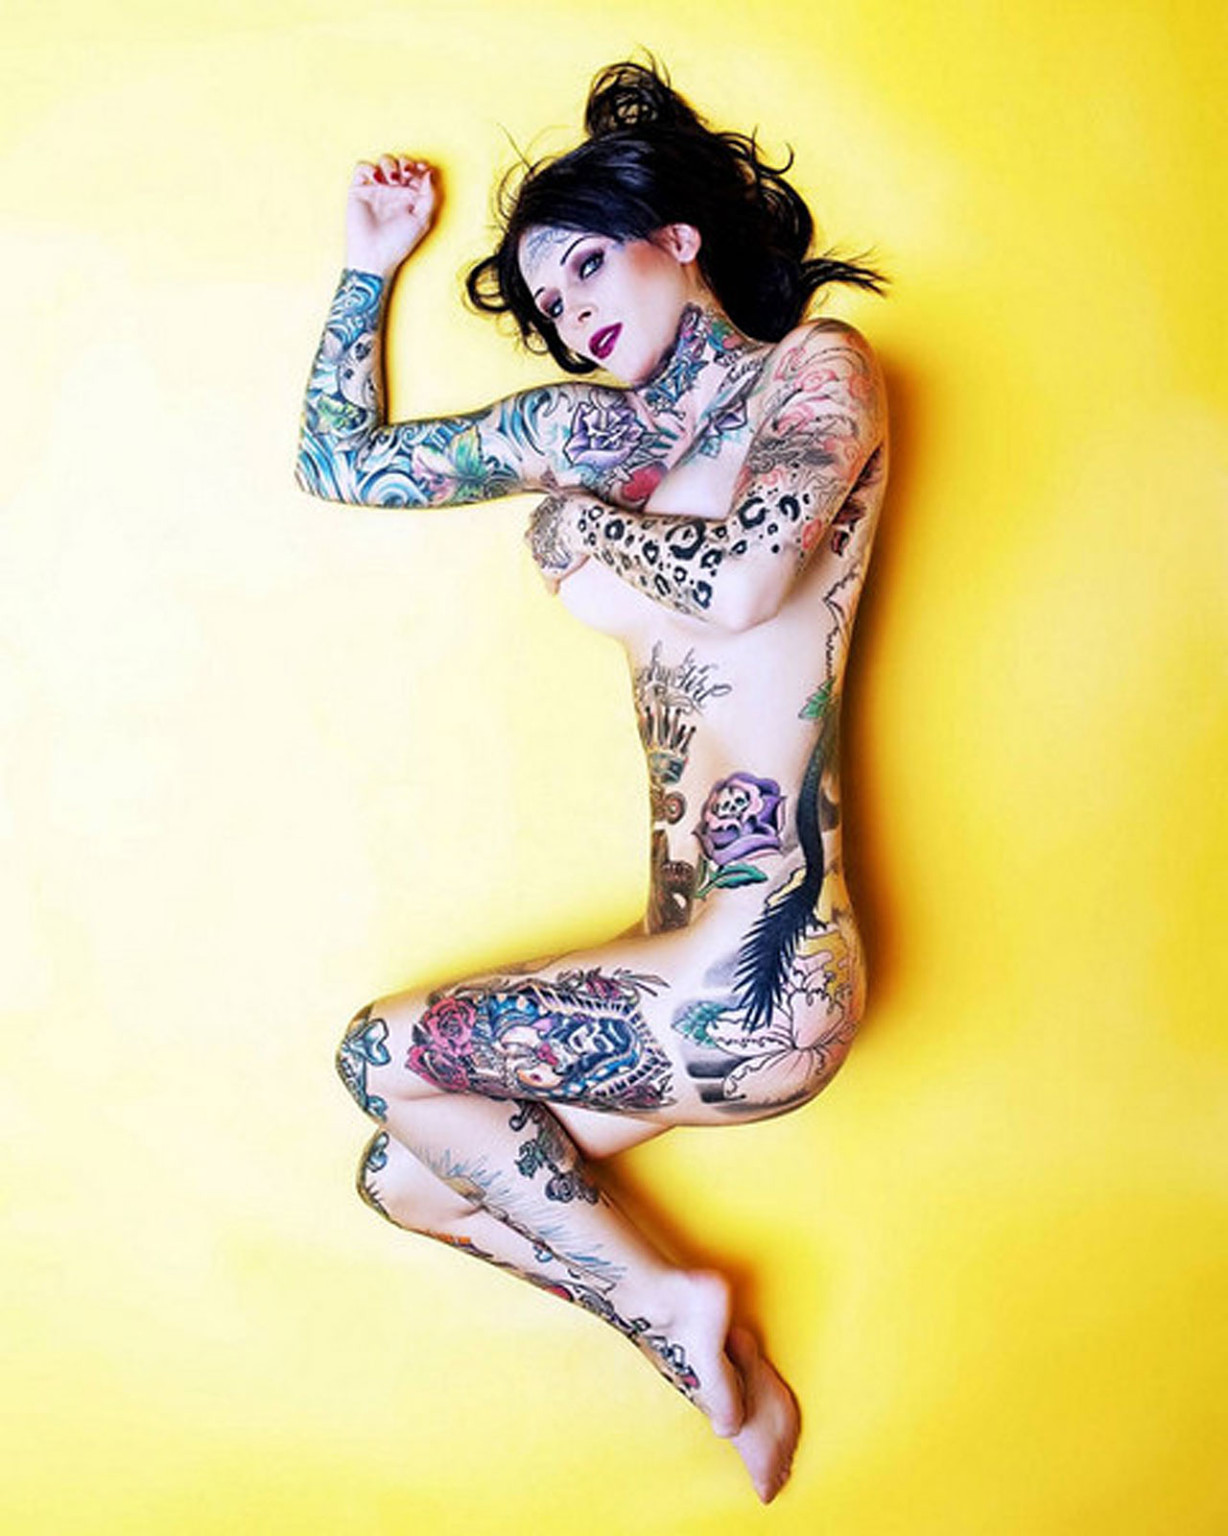 Michelle bombshell zeigt sexy nackten Körper und ihre Tattoos
 #75352320